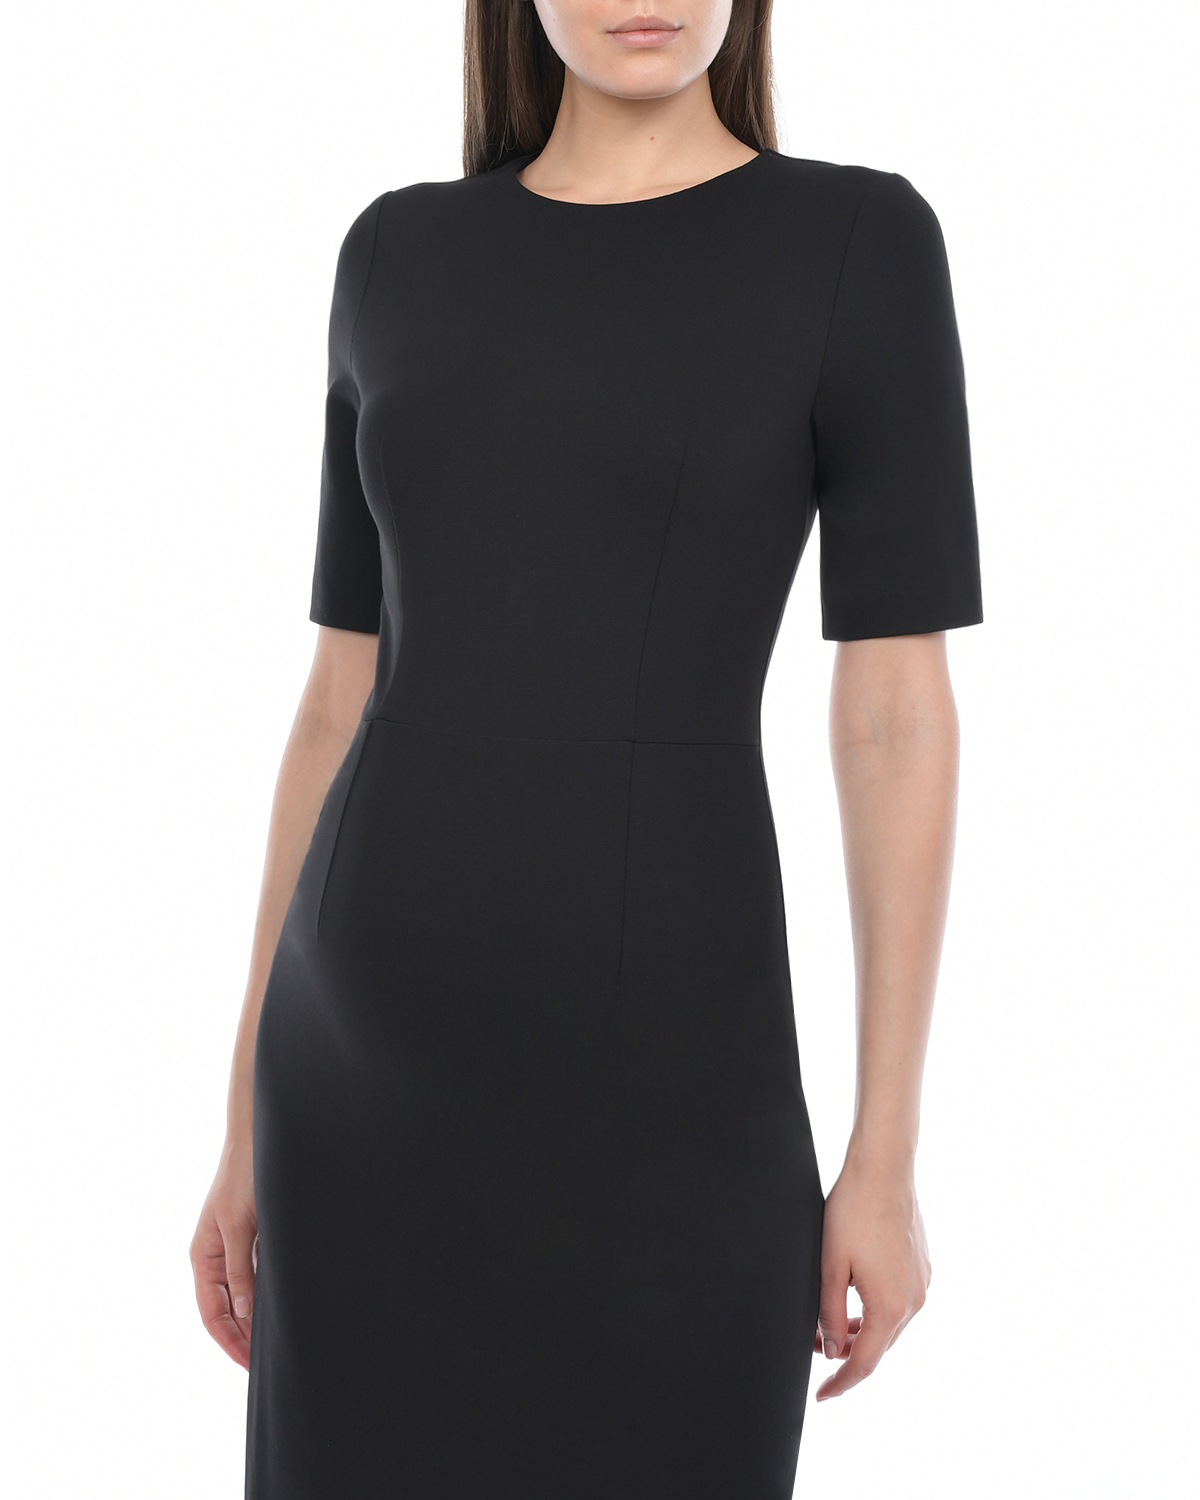 Трикотажное черное платье-футляр Dan Maralex, размер 42, цвет черный - фото 6